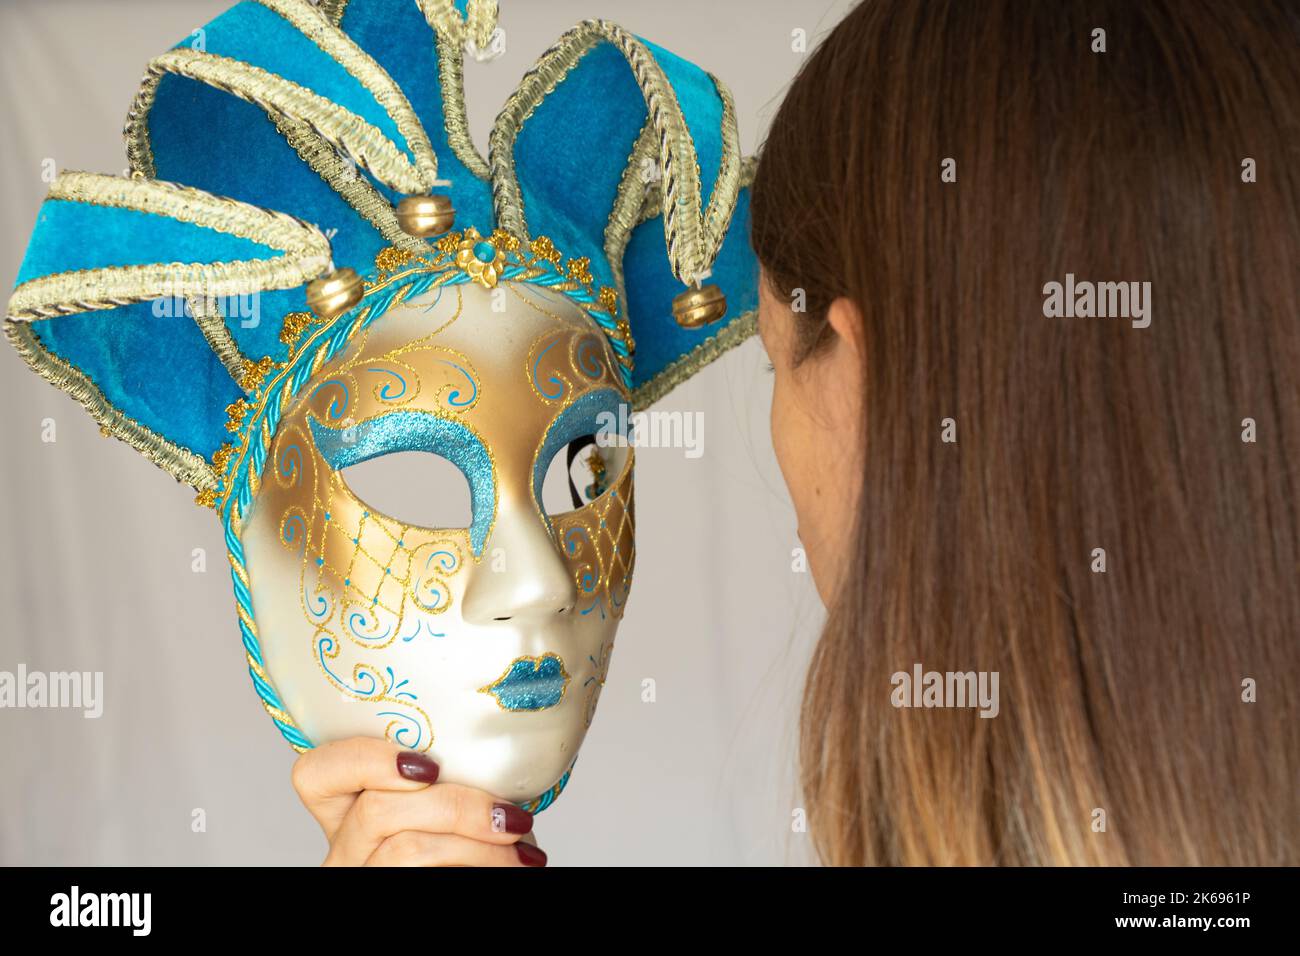 Il volto di una ragazza in una maschera di carnevale veneziana su uno sfondo isolato, mascherata e attore mascherato, teatro Foto Stock